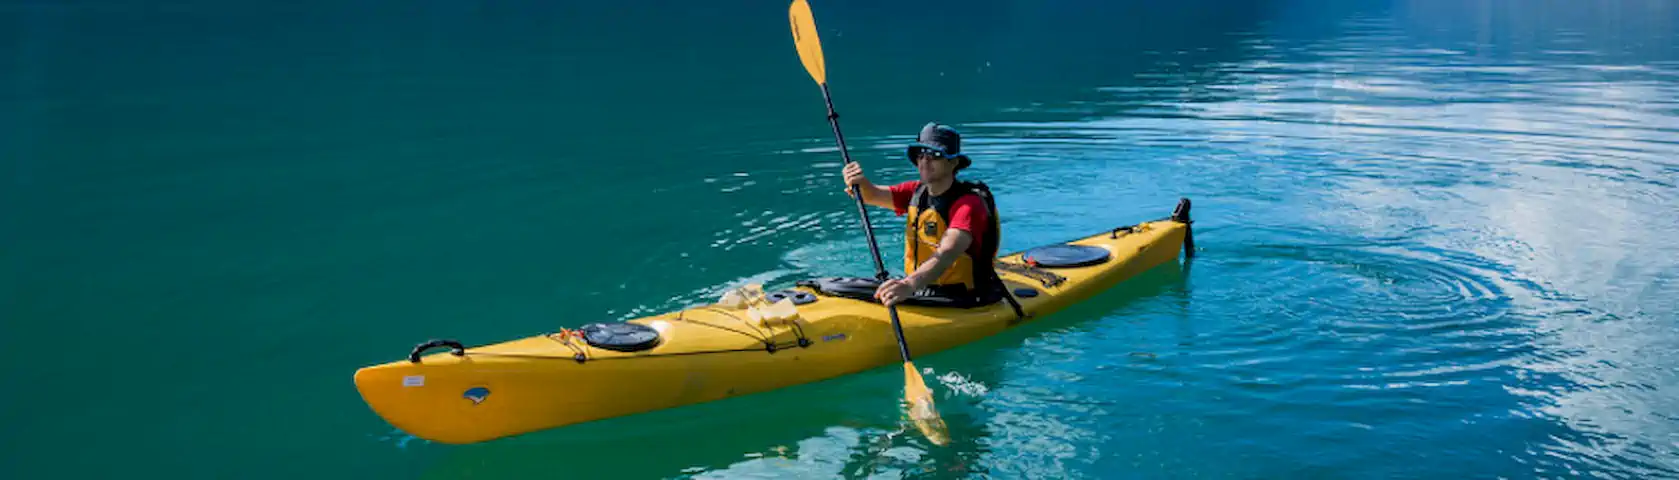 SUP kayak rental dalyan or sarigerme kano kiralama dalyan 